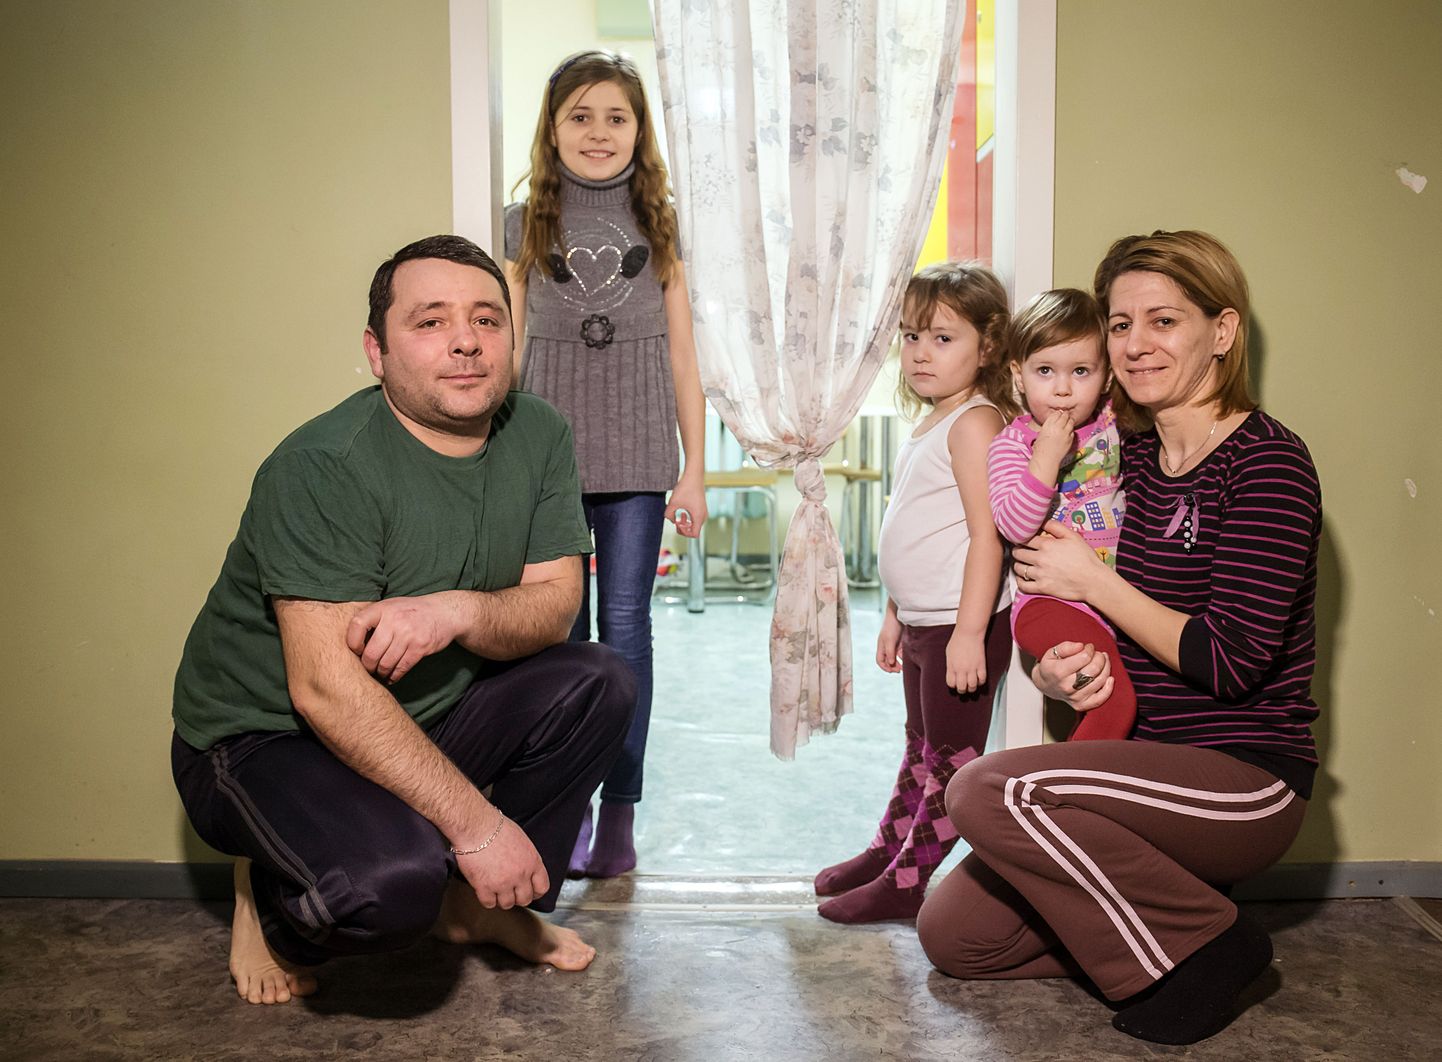 Lääne-Virumaa, Vao. 25JAN16.  Varjupaika taotlevat Albaania perekonda ähvardab väljasaatmine. Isa: Almen. Ema: Manjola. Lapsed:
Amanda (10), Artjona (4) ja Alyssa (1). FOTO: ERIK PROZES / POSTIMEES